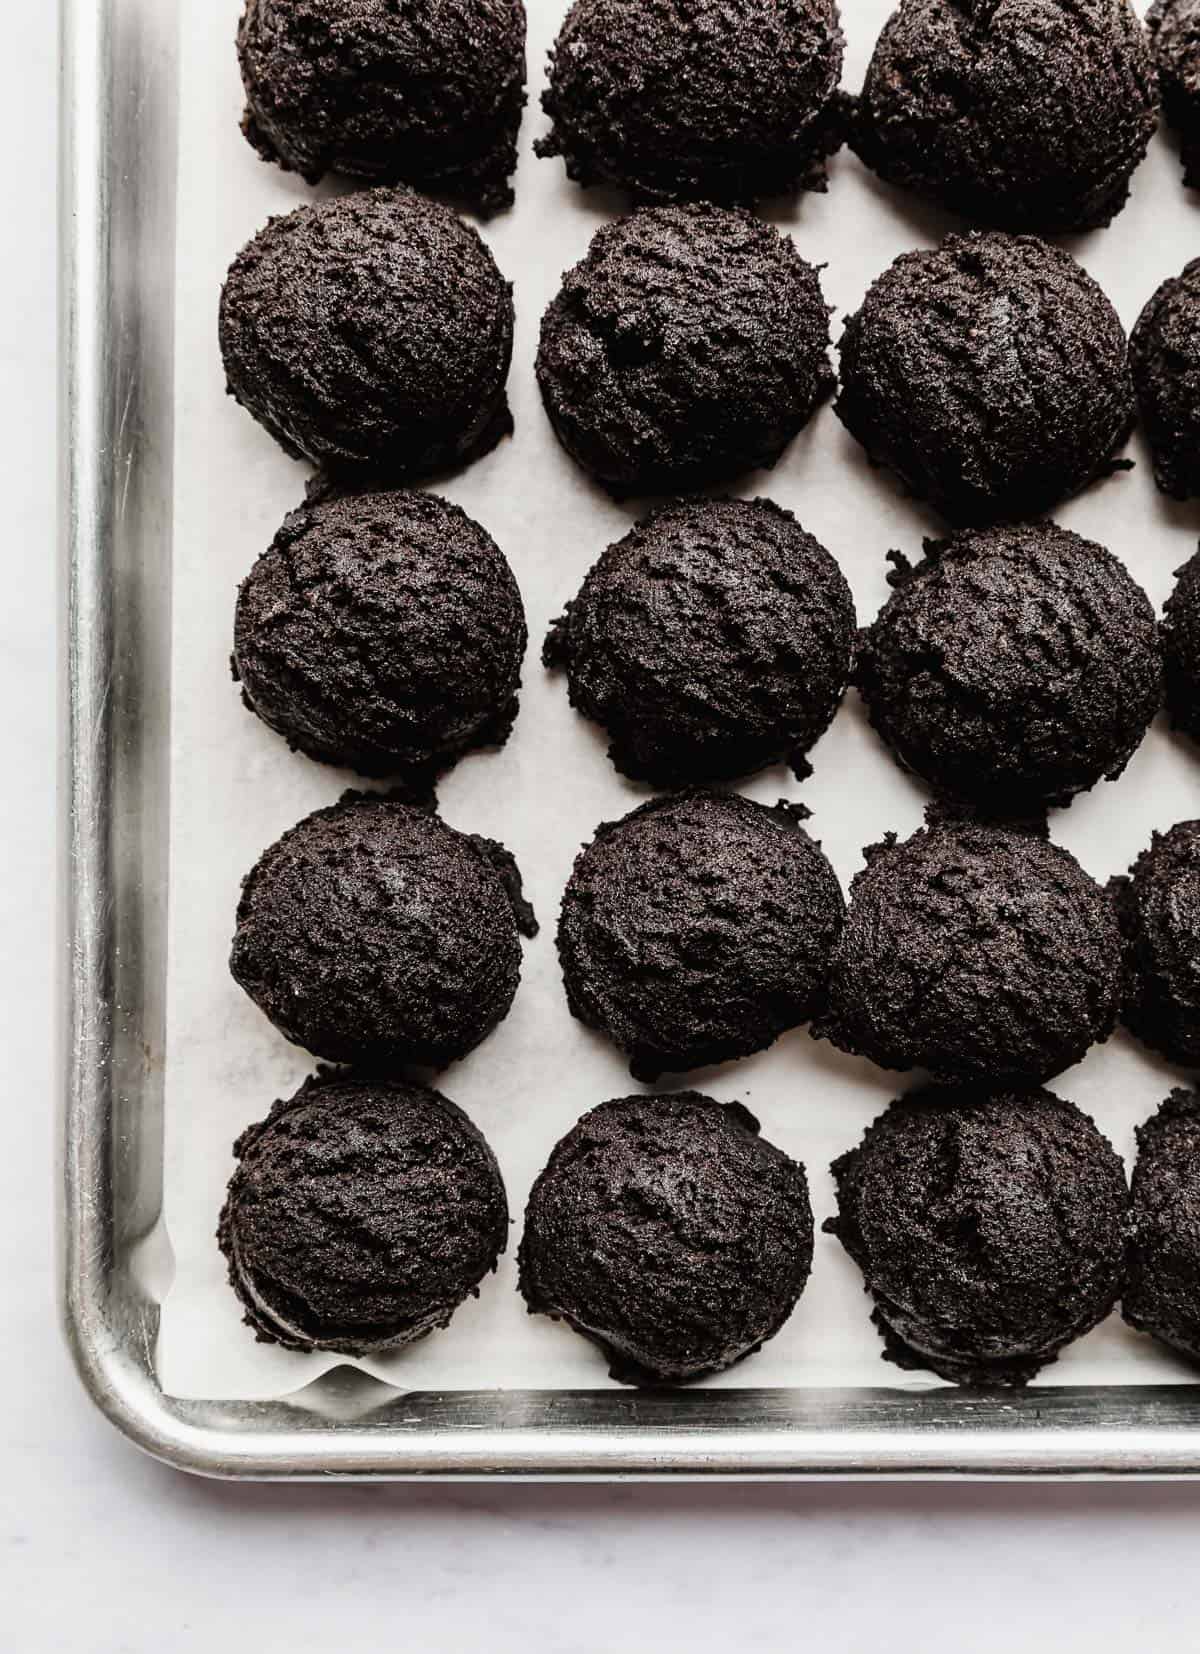 Oreo cookie dough balls on a baking sheet.